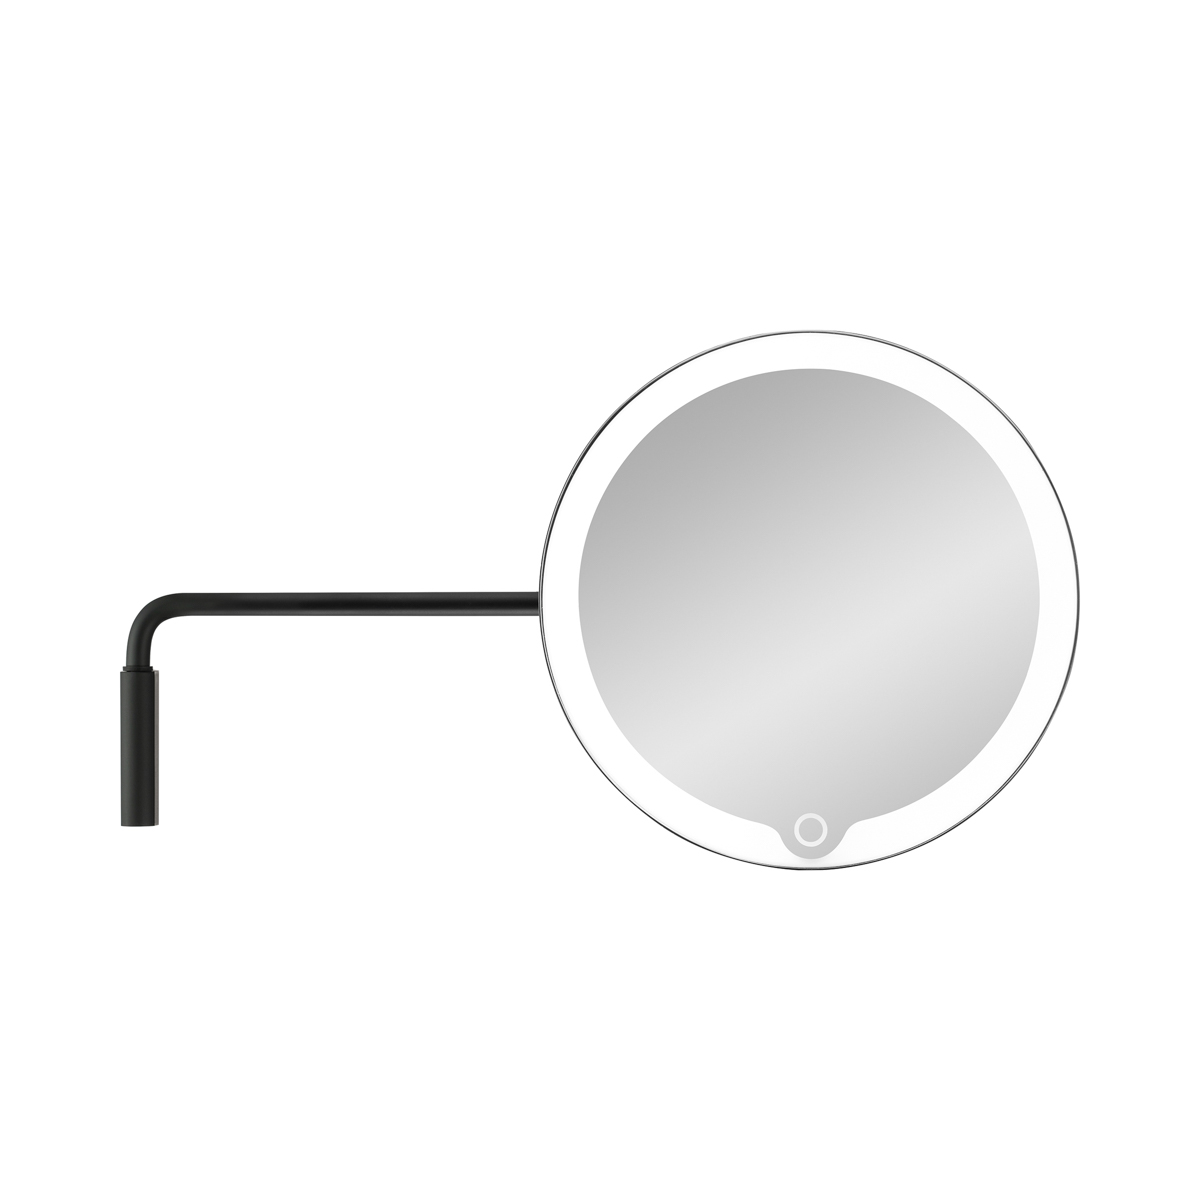 LED Kosmetikspiegel -MODO- Black mit Wandhalterung. Material: Edelstahl Titanbeschichtet, Kunststoff. Von Blomus.